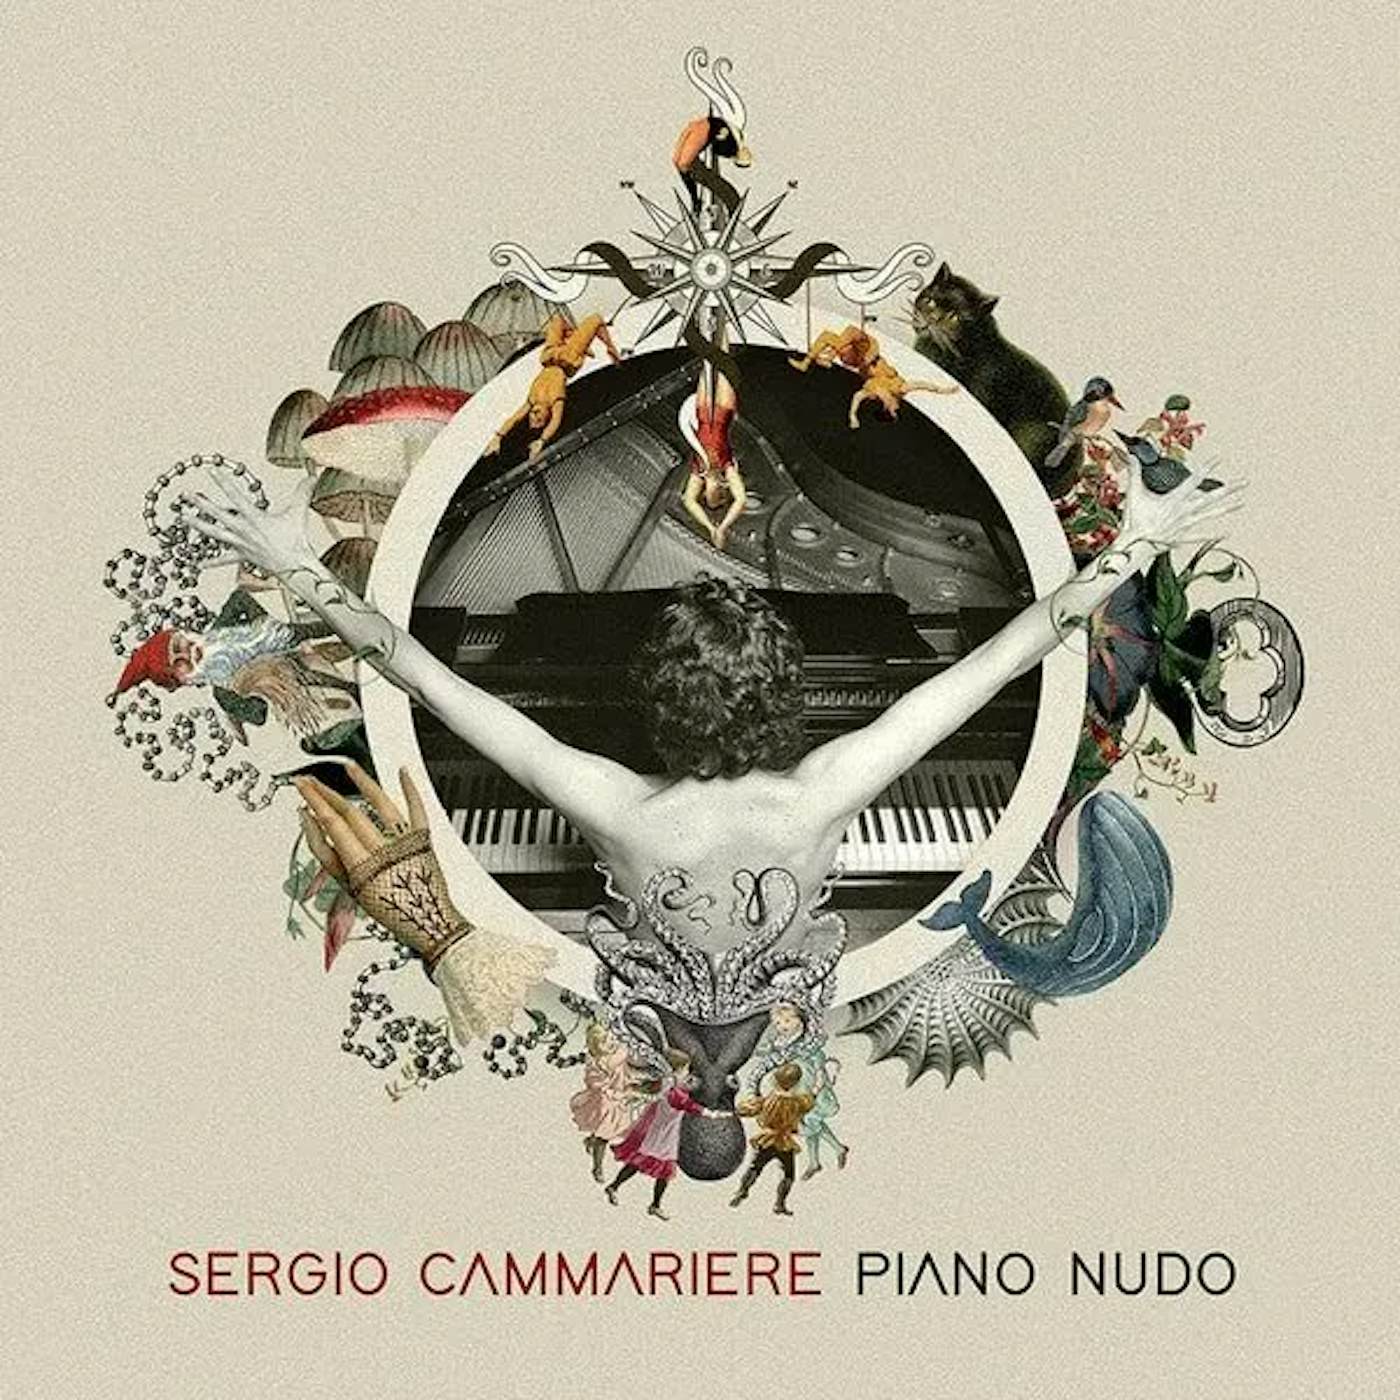 Sergio Cammariere PIANO NUDO Vinyl Record